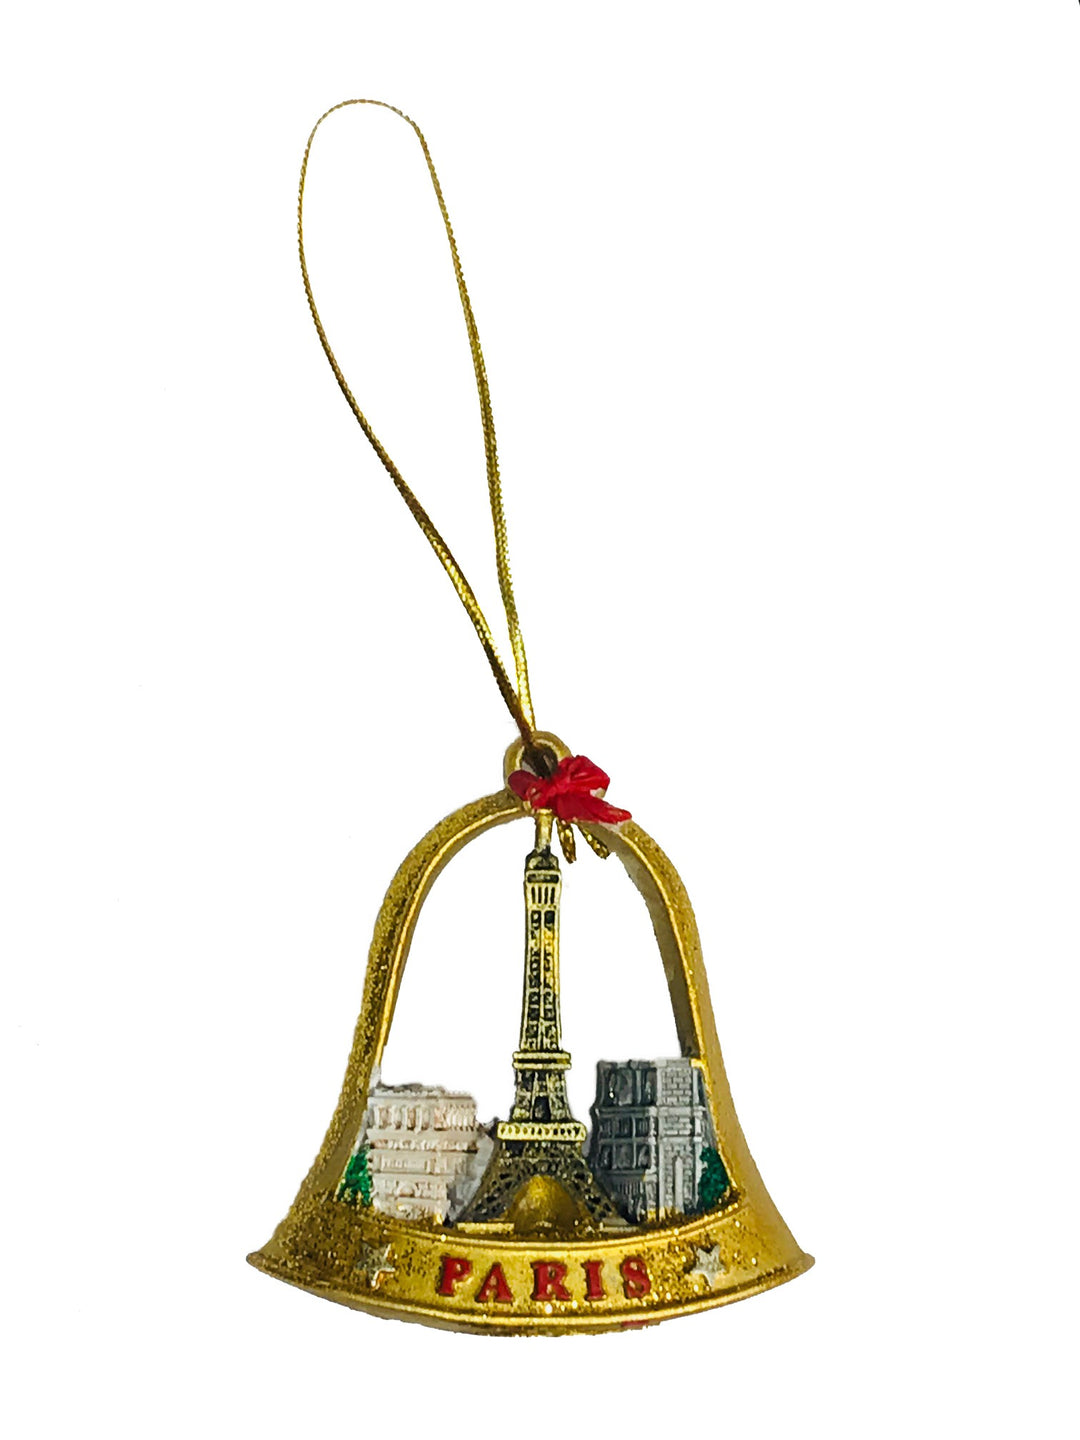 Cloche de Noël dorée représentant la Tour Eiffel, l'Arc de Triomphe et Notre-Dame de Paris, posée sur une surface avec des paillettes scintillantes